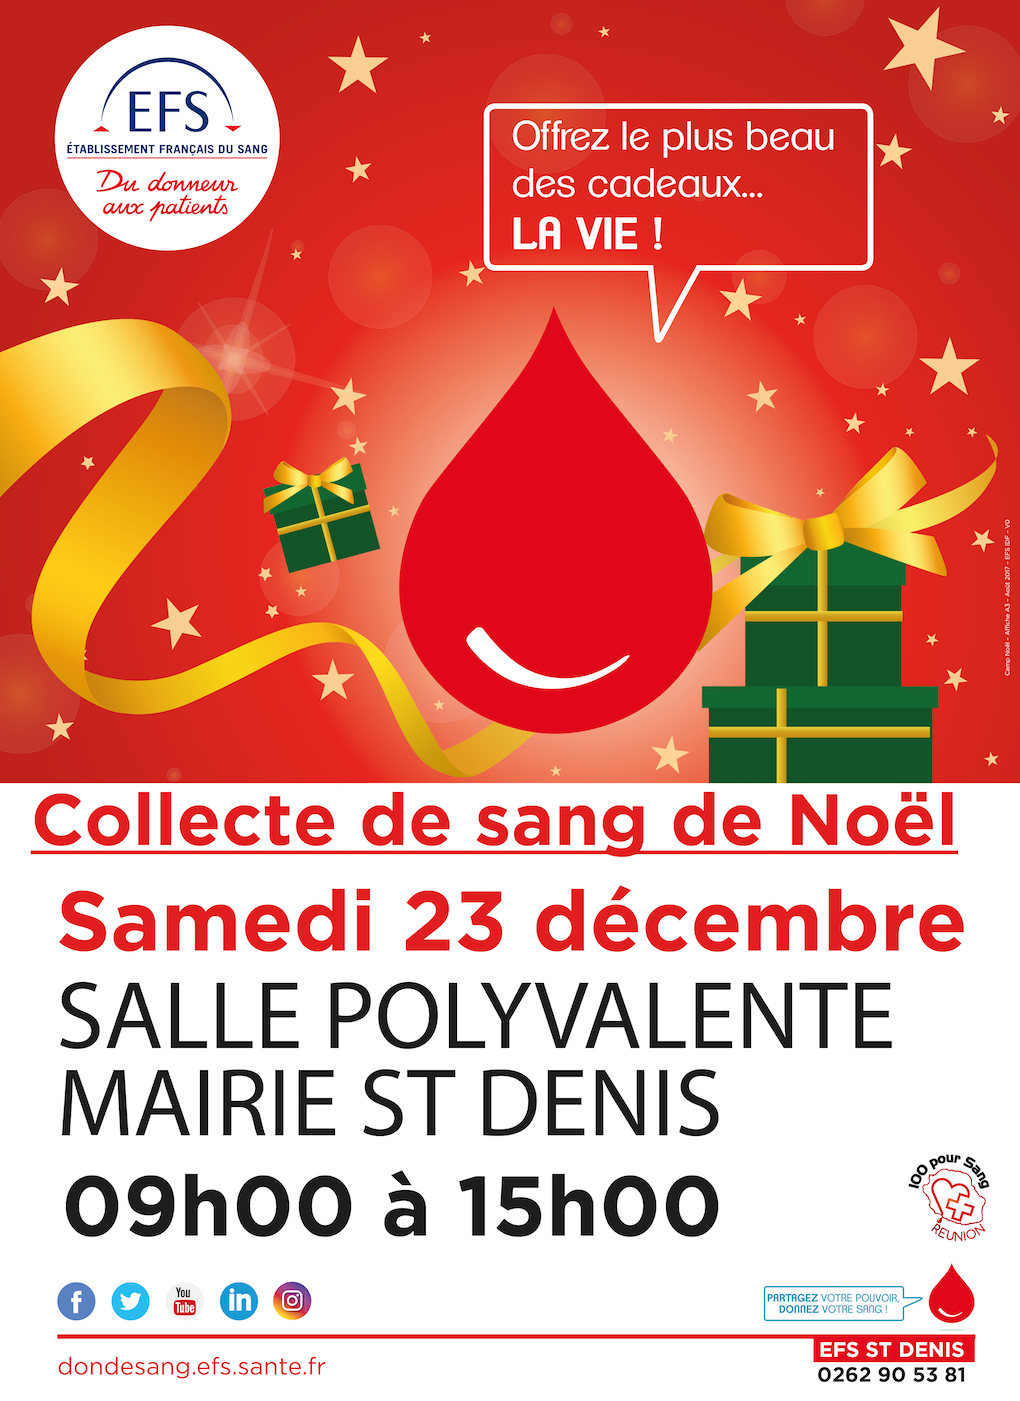 Réserves de sang fragiles à l’approche des fêtes: "Donnez votre sang, c’est urgent"